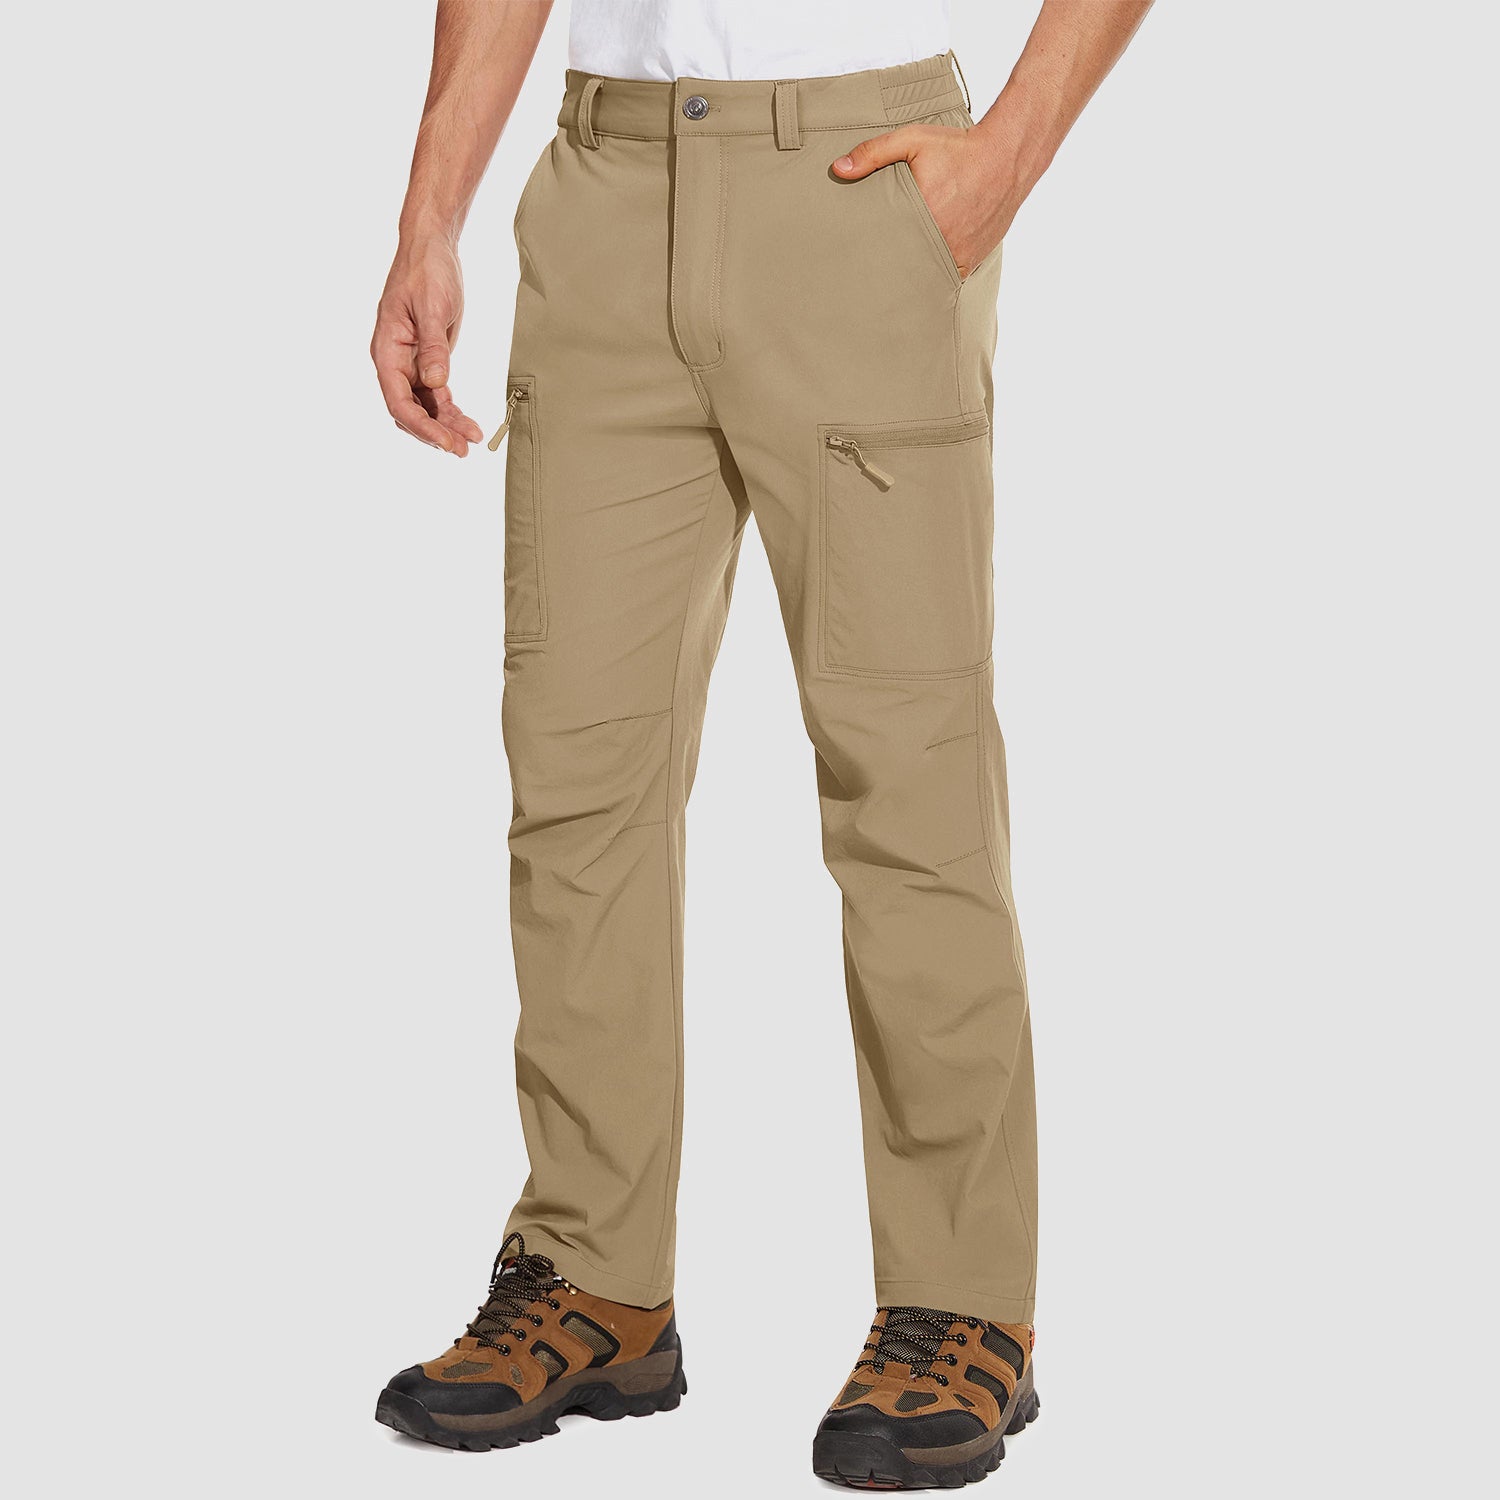 Men's Fleece Lined Cargo Pants Camo Hiking Tactical Ripstop Pants Winter  Outdoor Work Cargo Pants with 8 Pockets (No Belt)